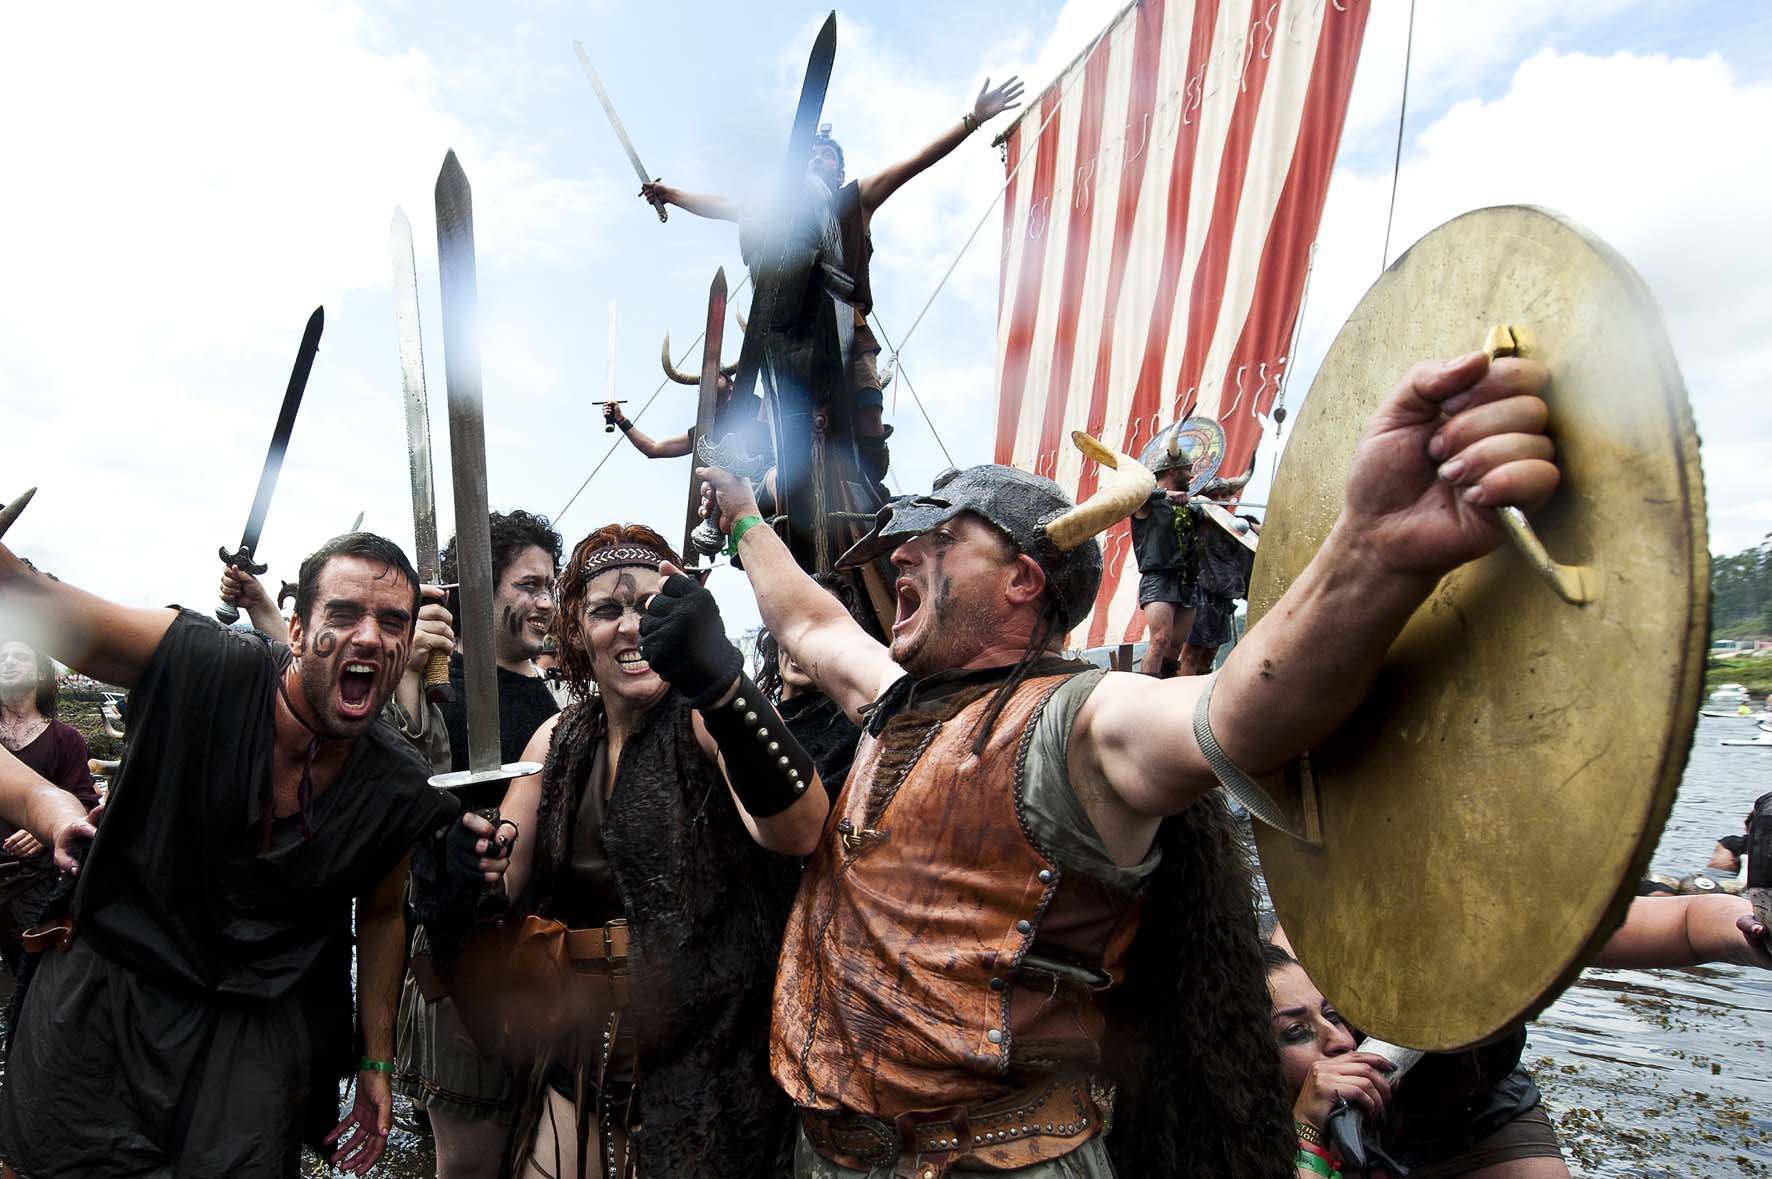 Vikingos en España, Desembarco vikingo en Catoira, Galicia